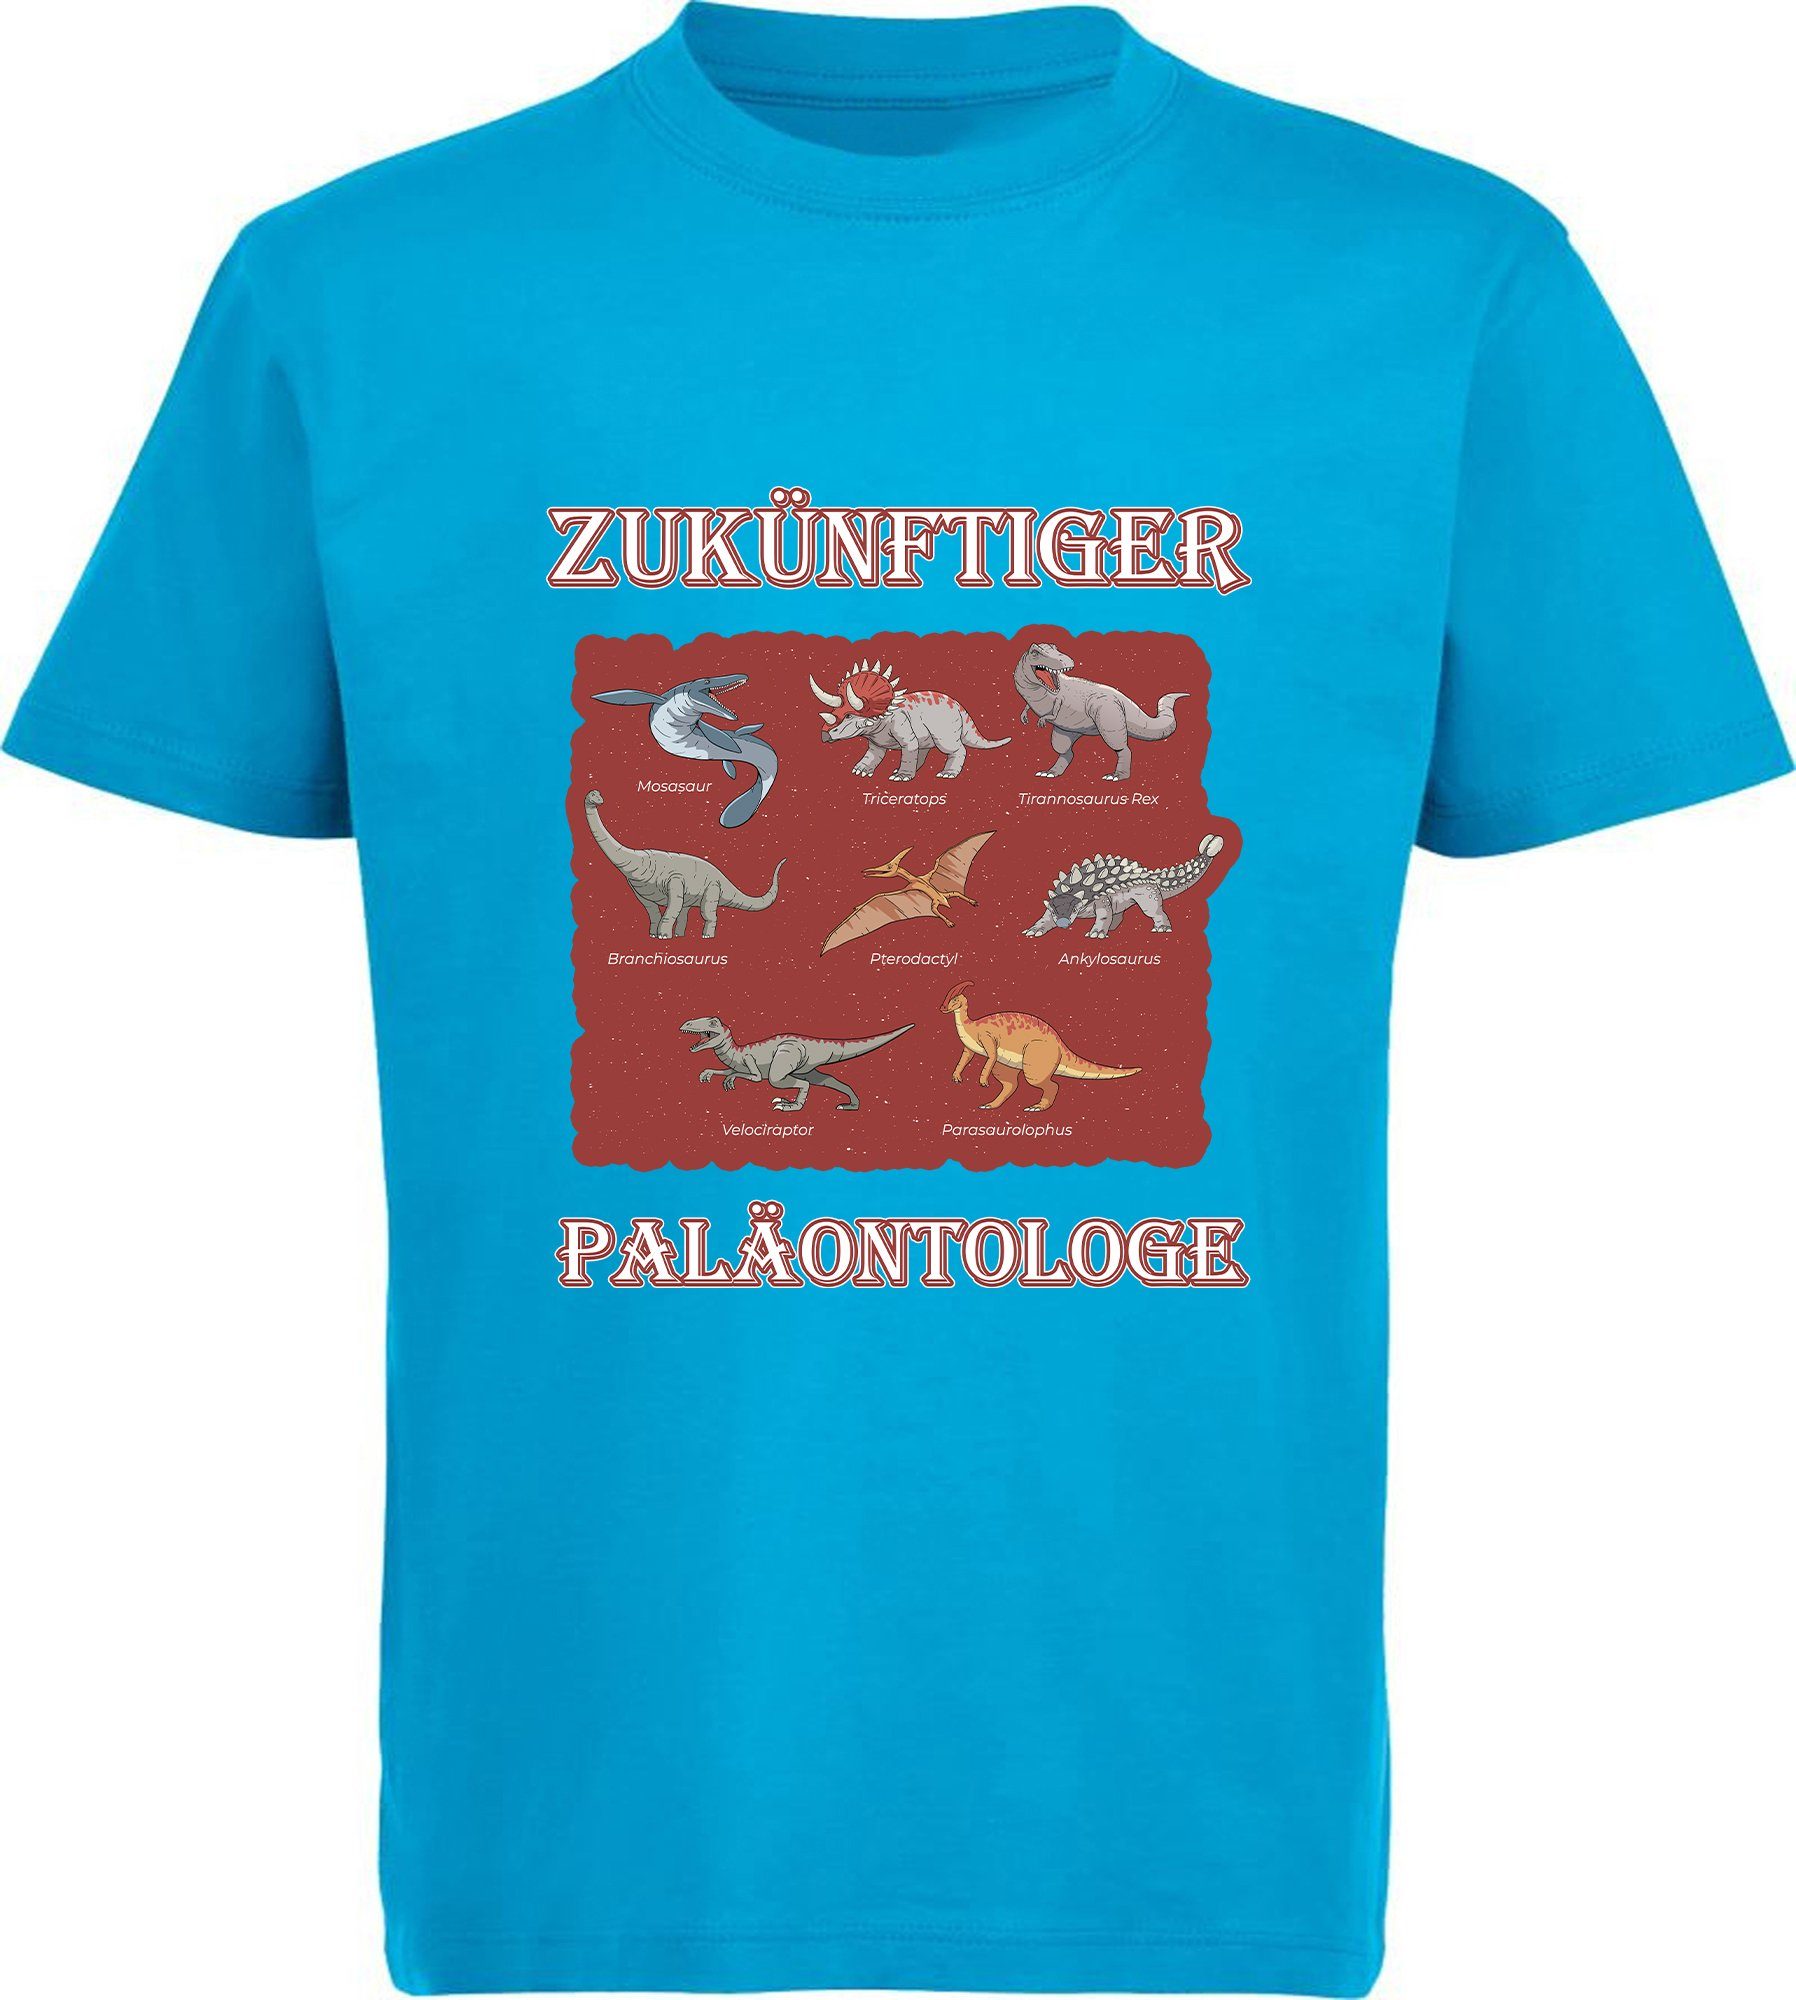 MyDesign24 T-Shirt bedrucktes Kinder T-Shirt i50 Paläontologe vielen Dino Dinosauriern 100% aqua Aufdruck, Baumwolle mit mit blau